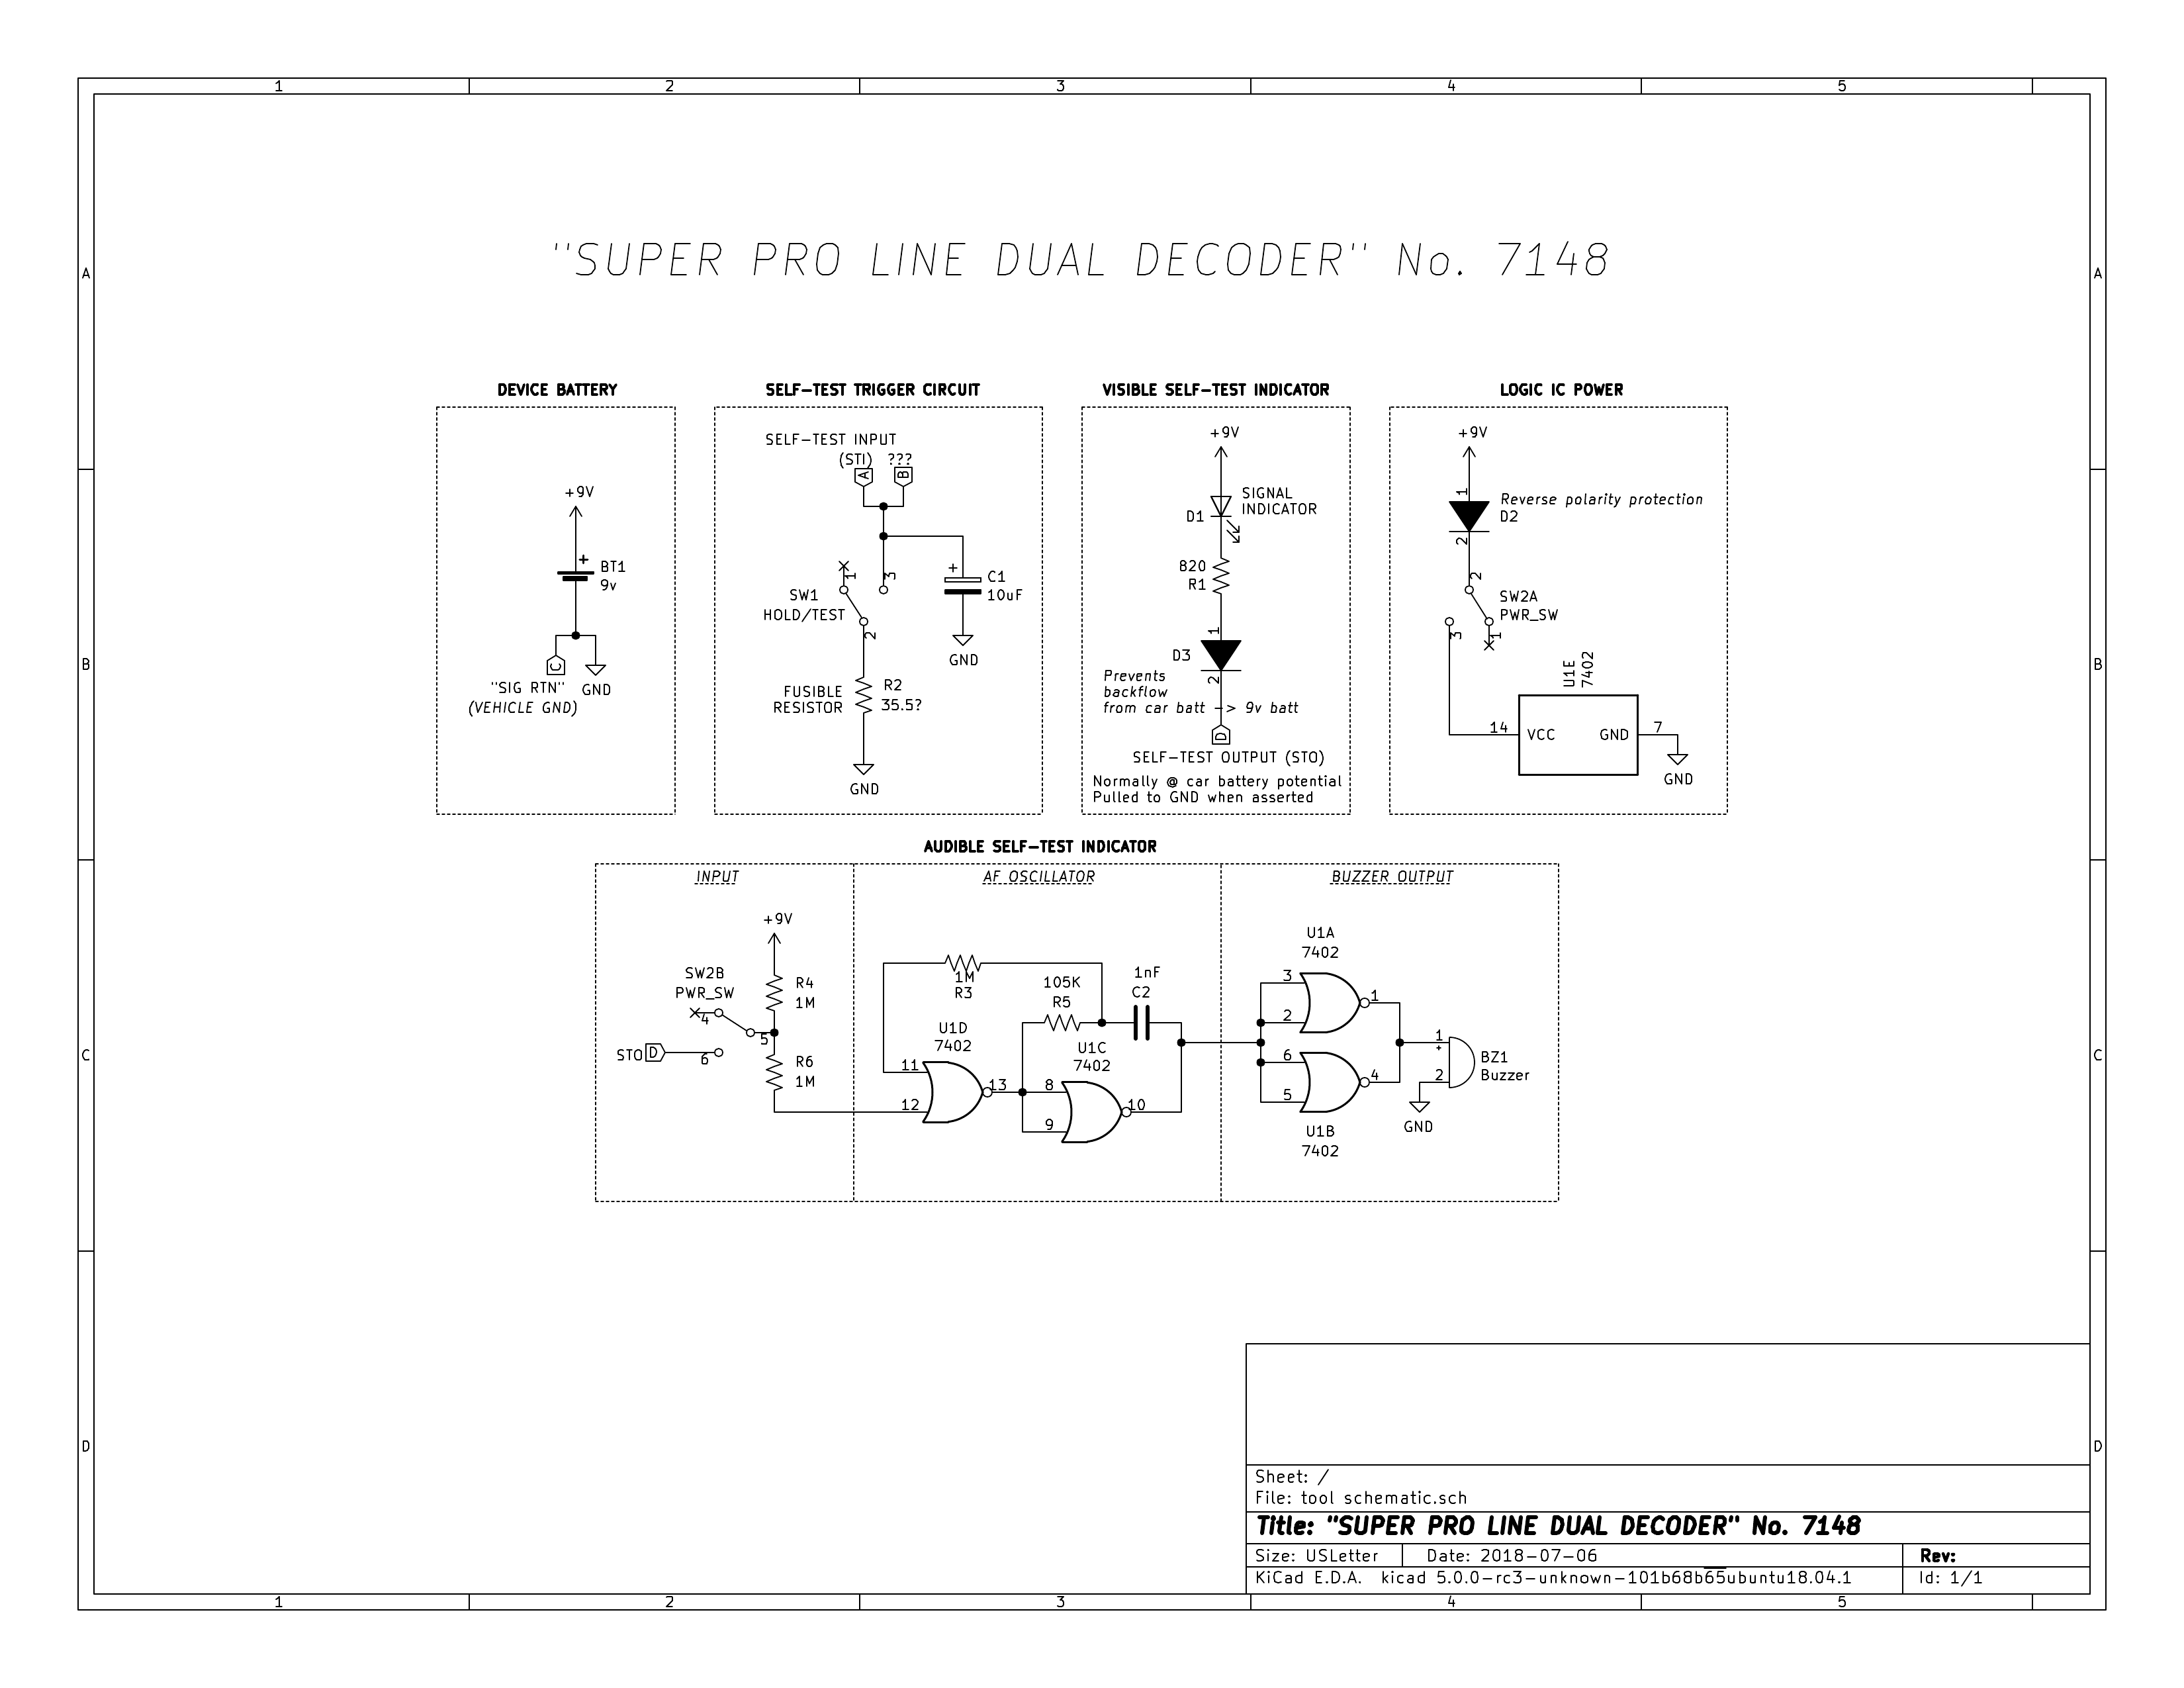 SuperPro 7148 Dual Decoder schematic